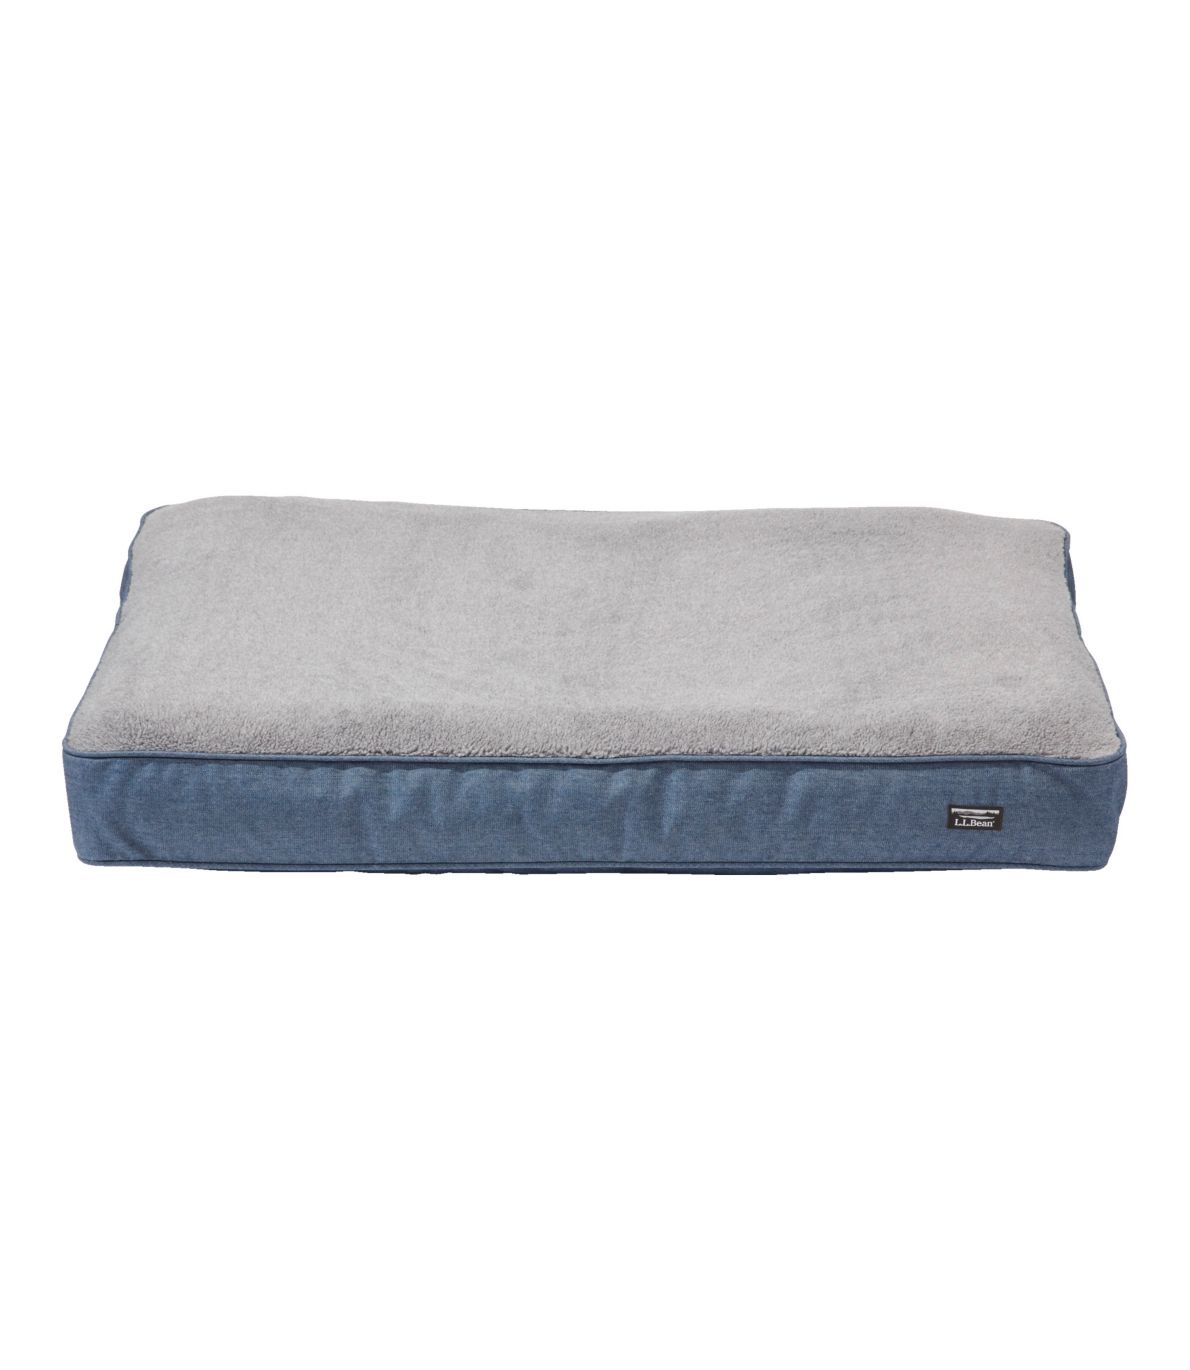 Premium Fleece Therapeutic Dog Bed, Rectangular